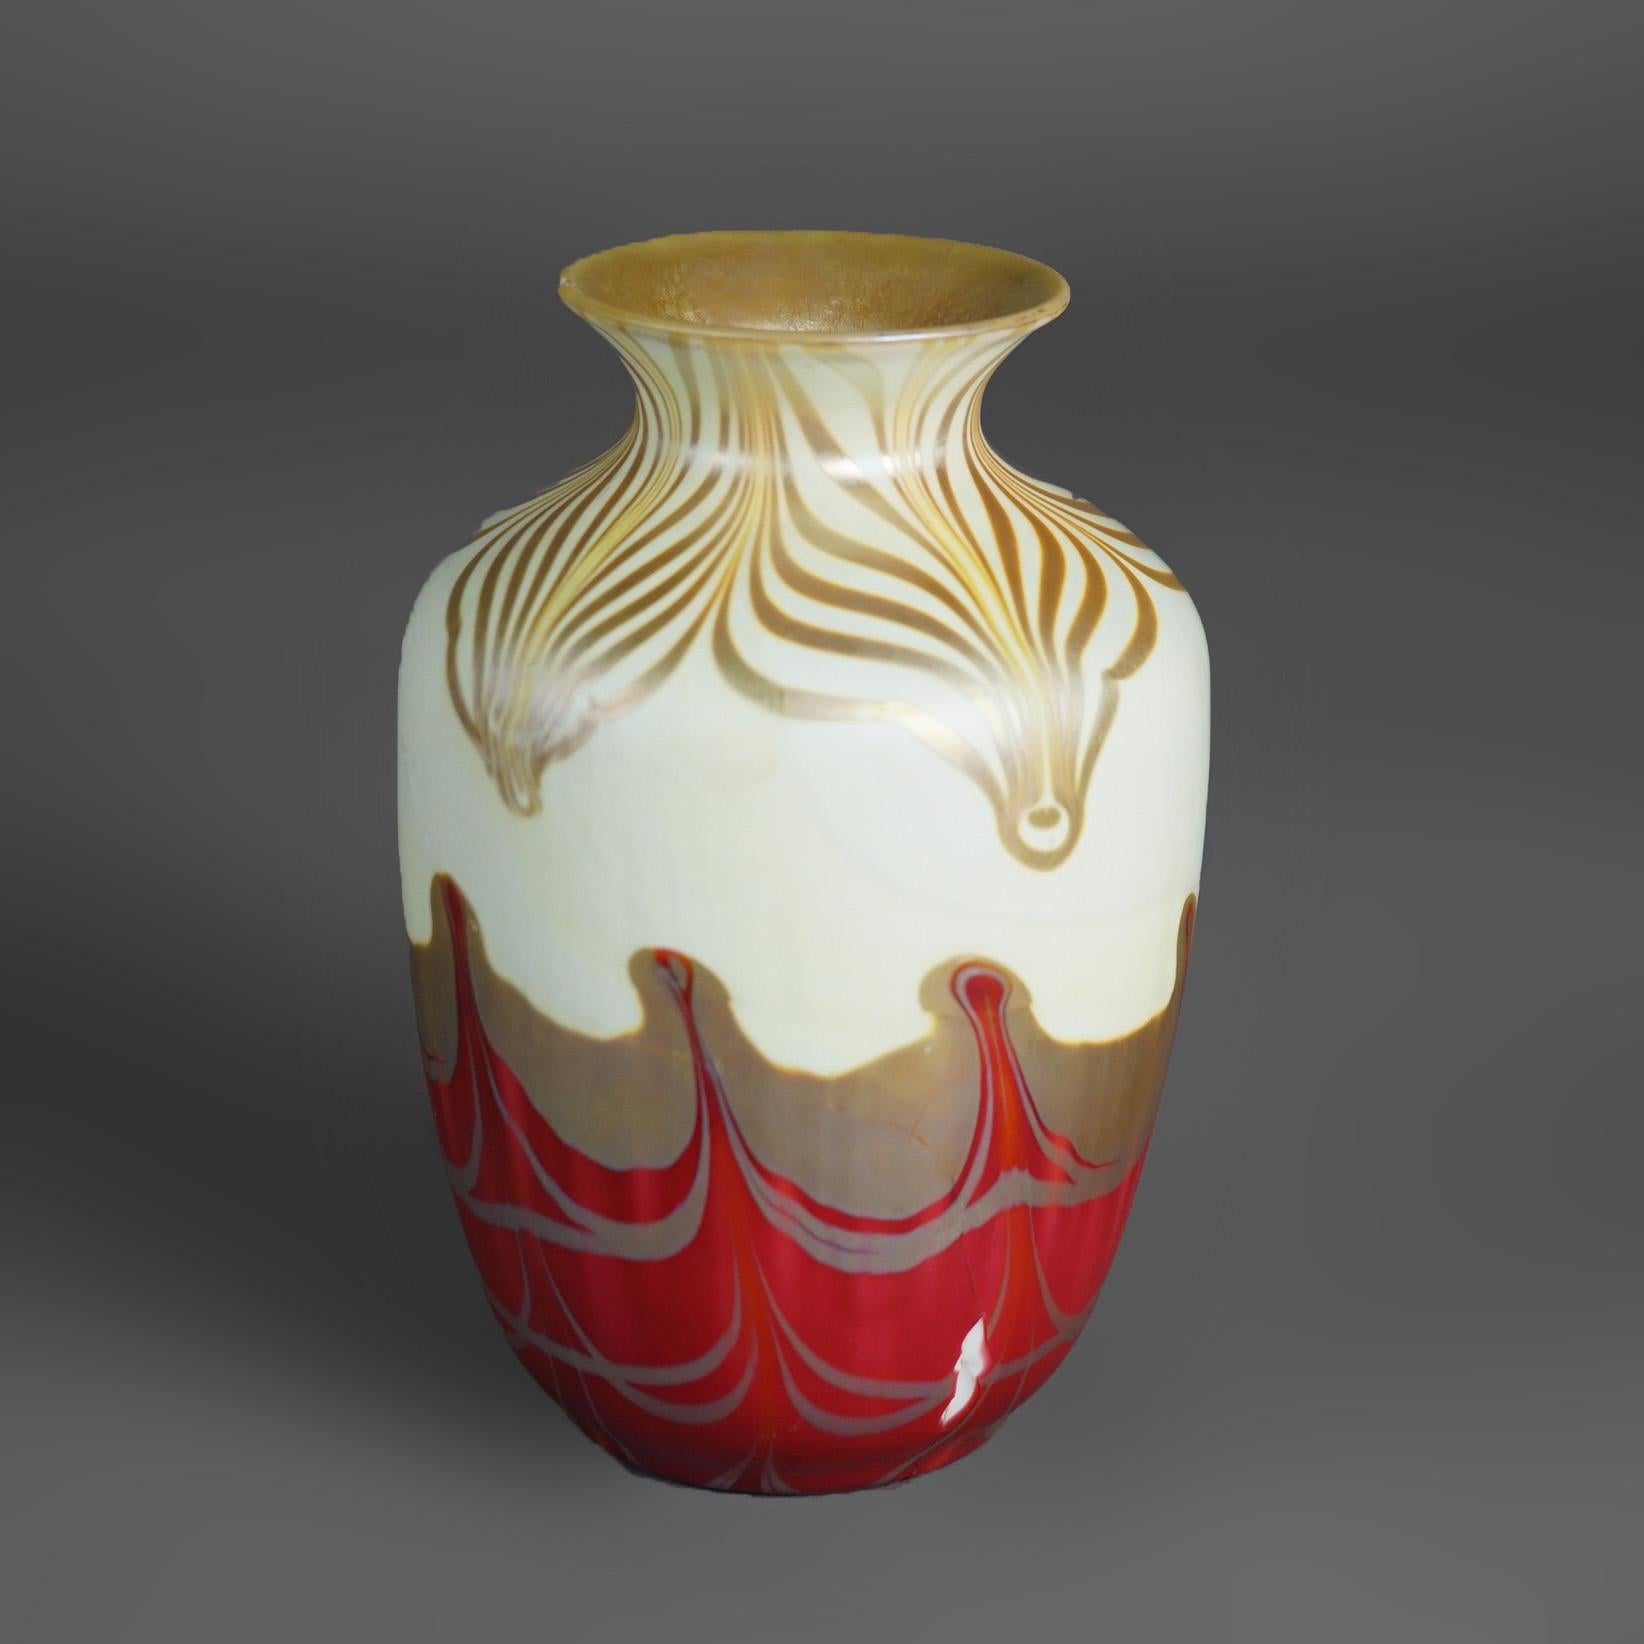 American Antique Steuben School Art Glass Vase As Found, Rare Color Circa 1920